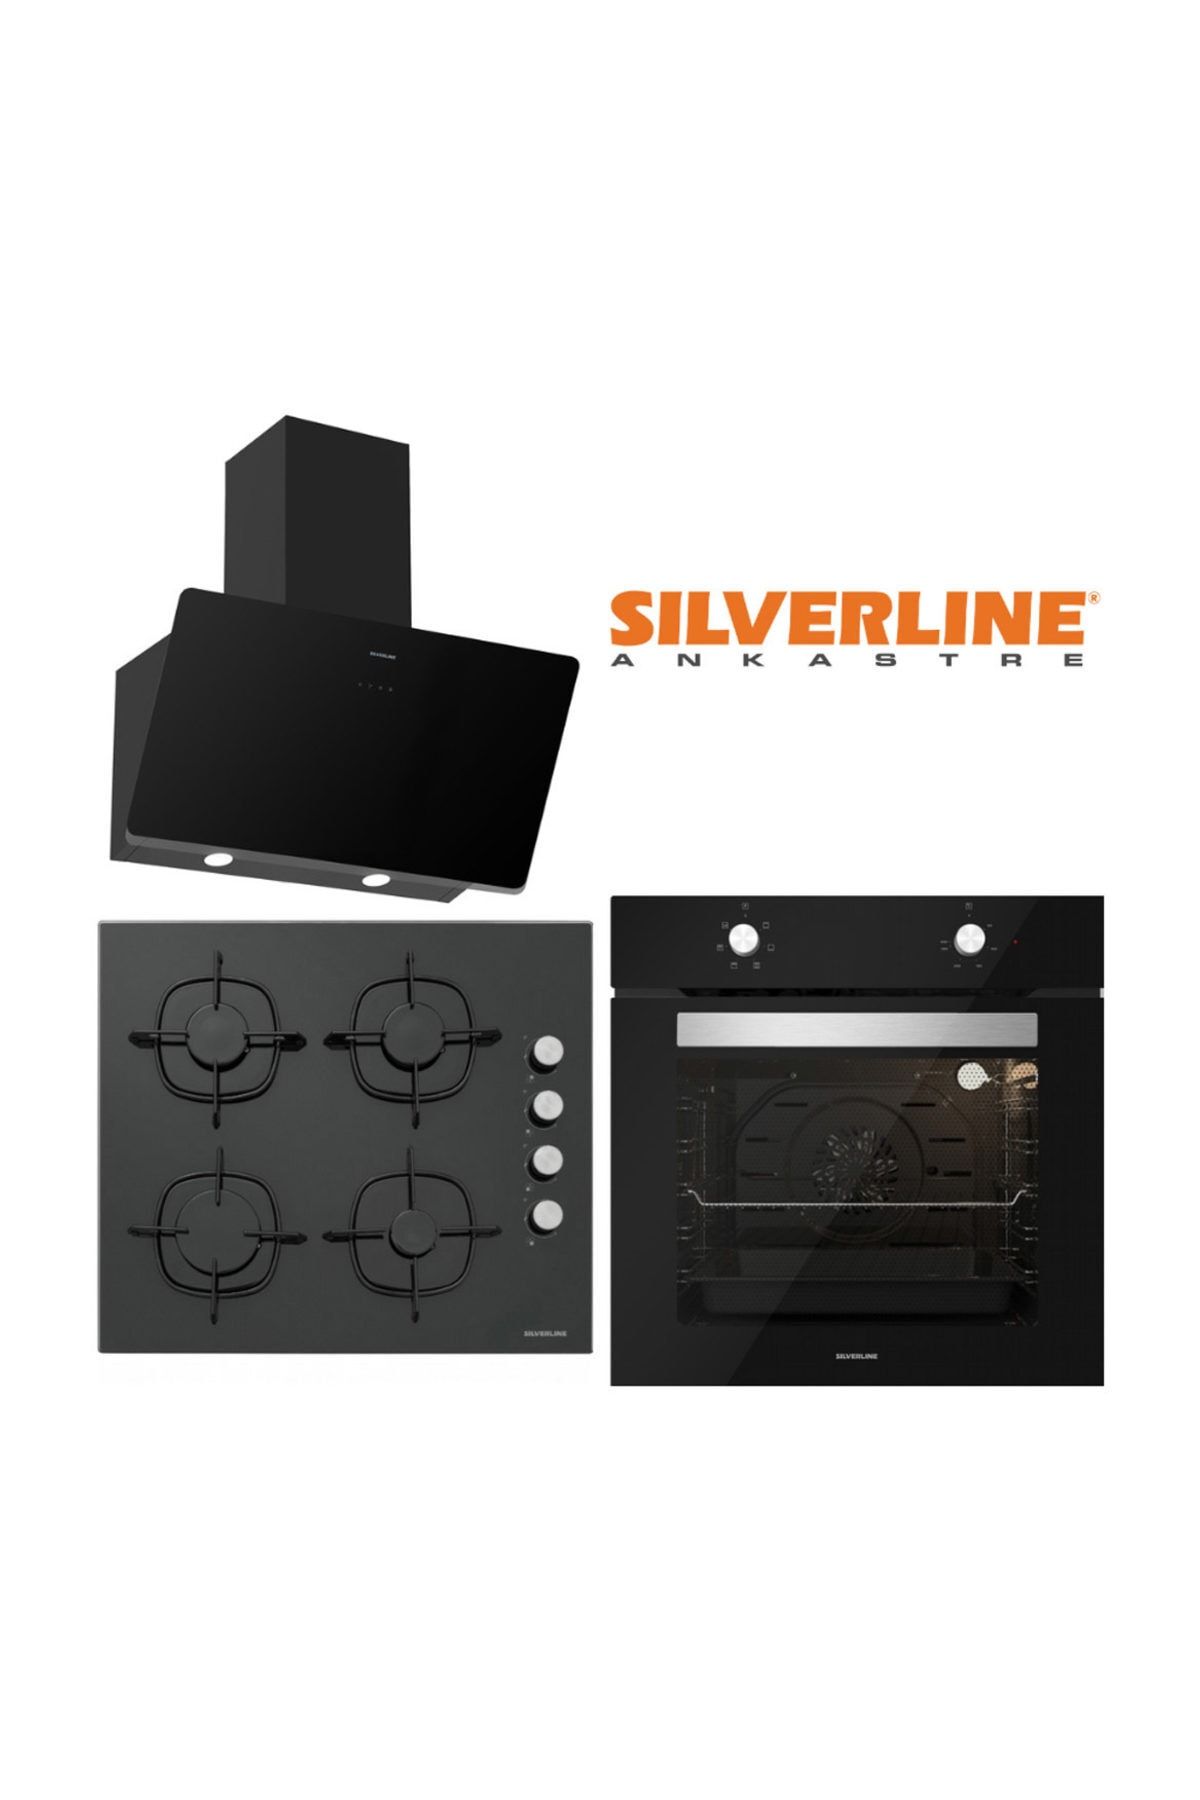 Silverline Siyah Cam Ankastre Set (3457 SOHO 60 CS5335B01 BO6501B01)